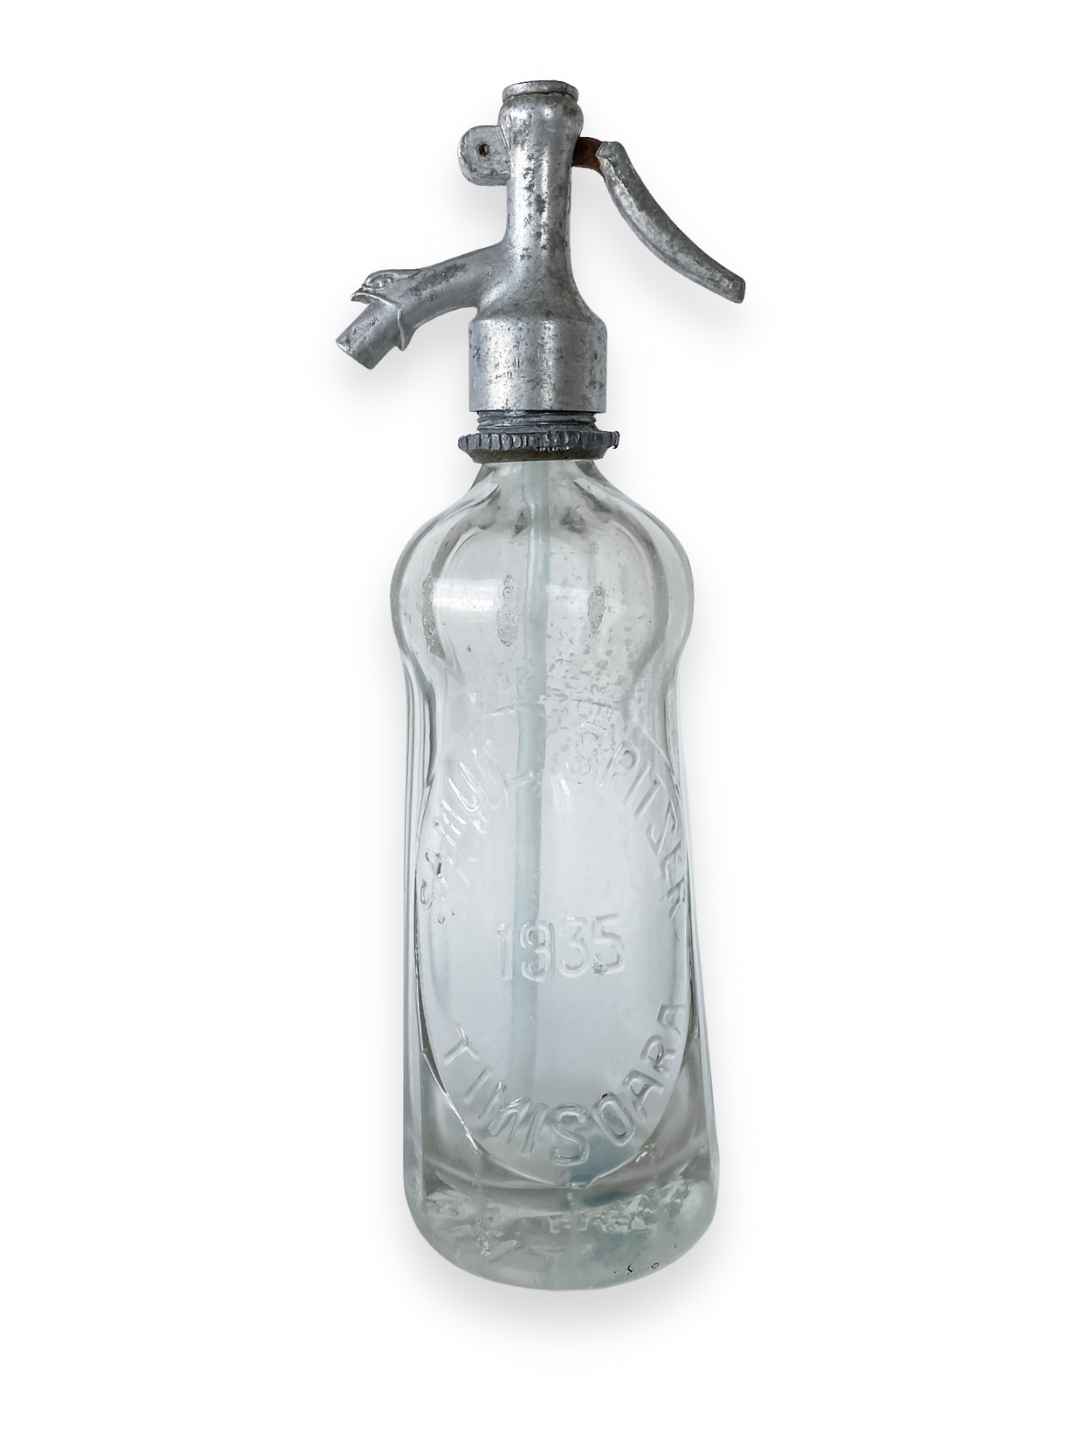 Vintage Seltzer Flasche "Samuil Spitzer" aus Glas 1935